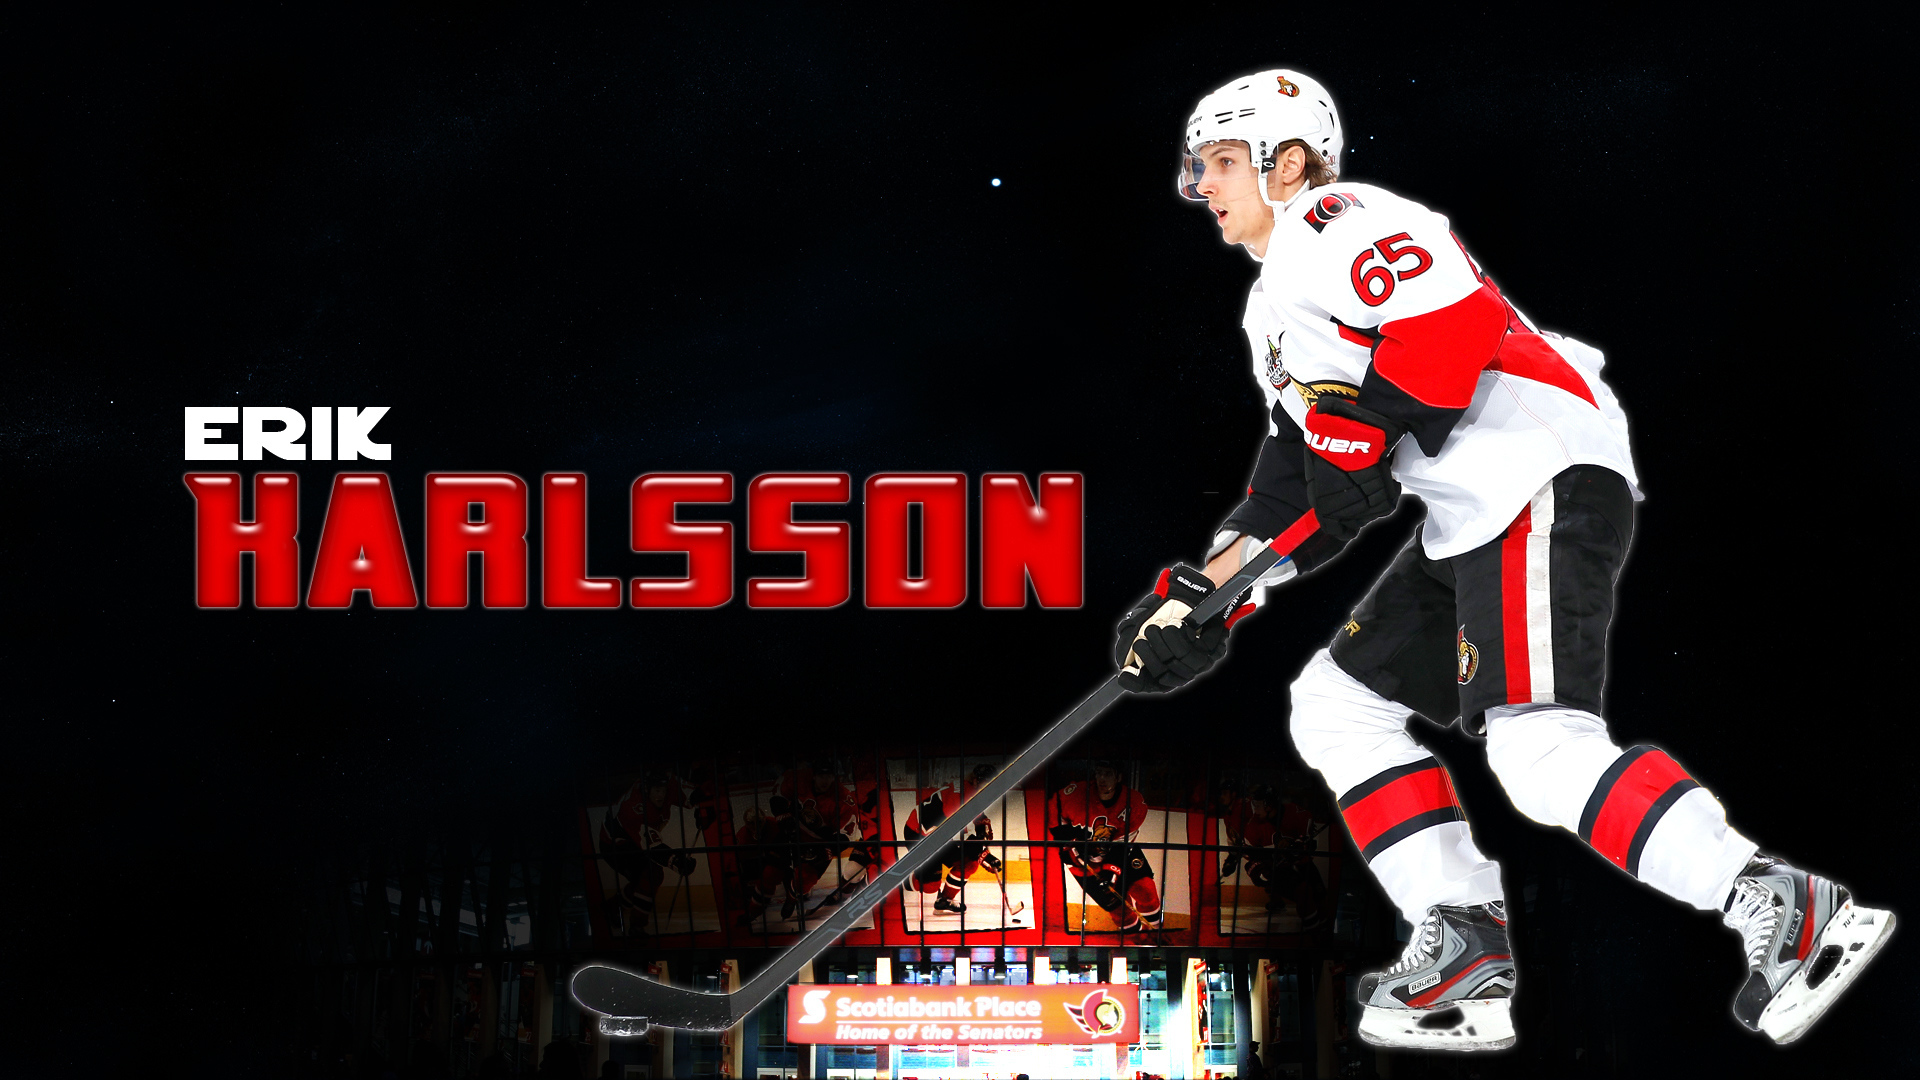 Best Hockey player Erik Karlsson